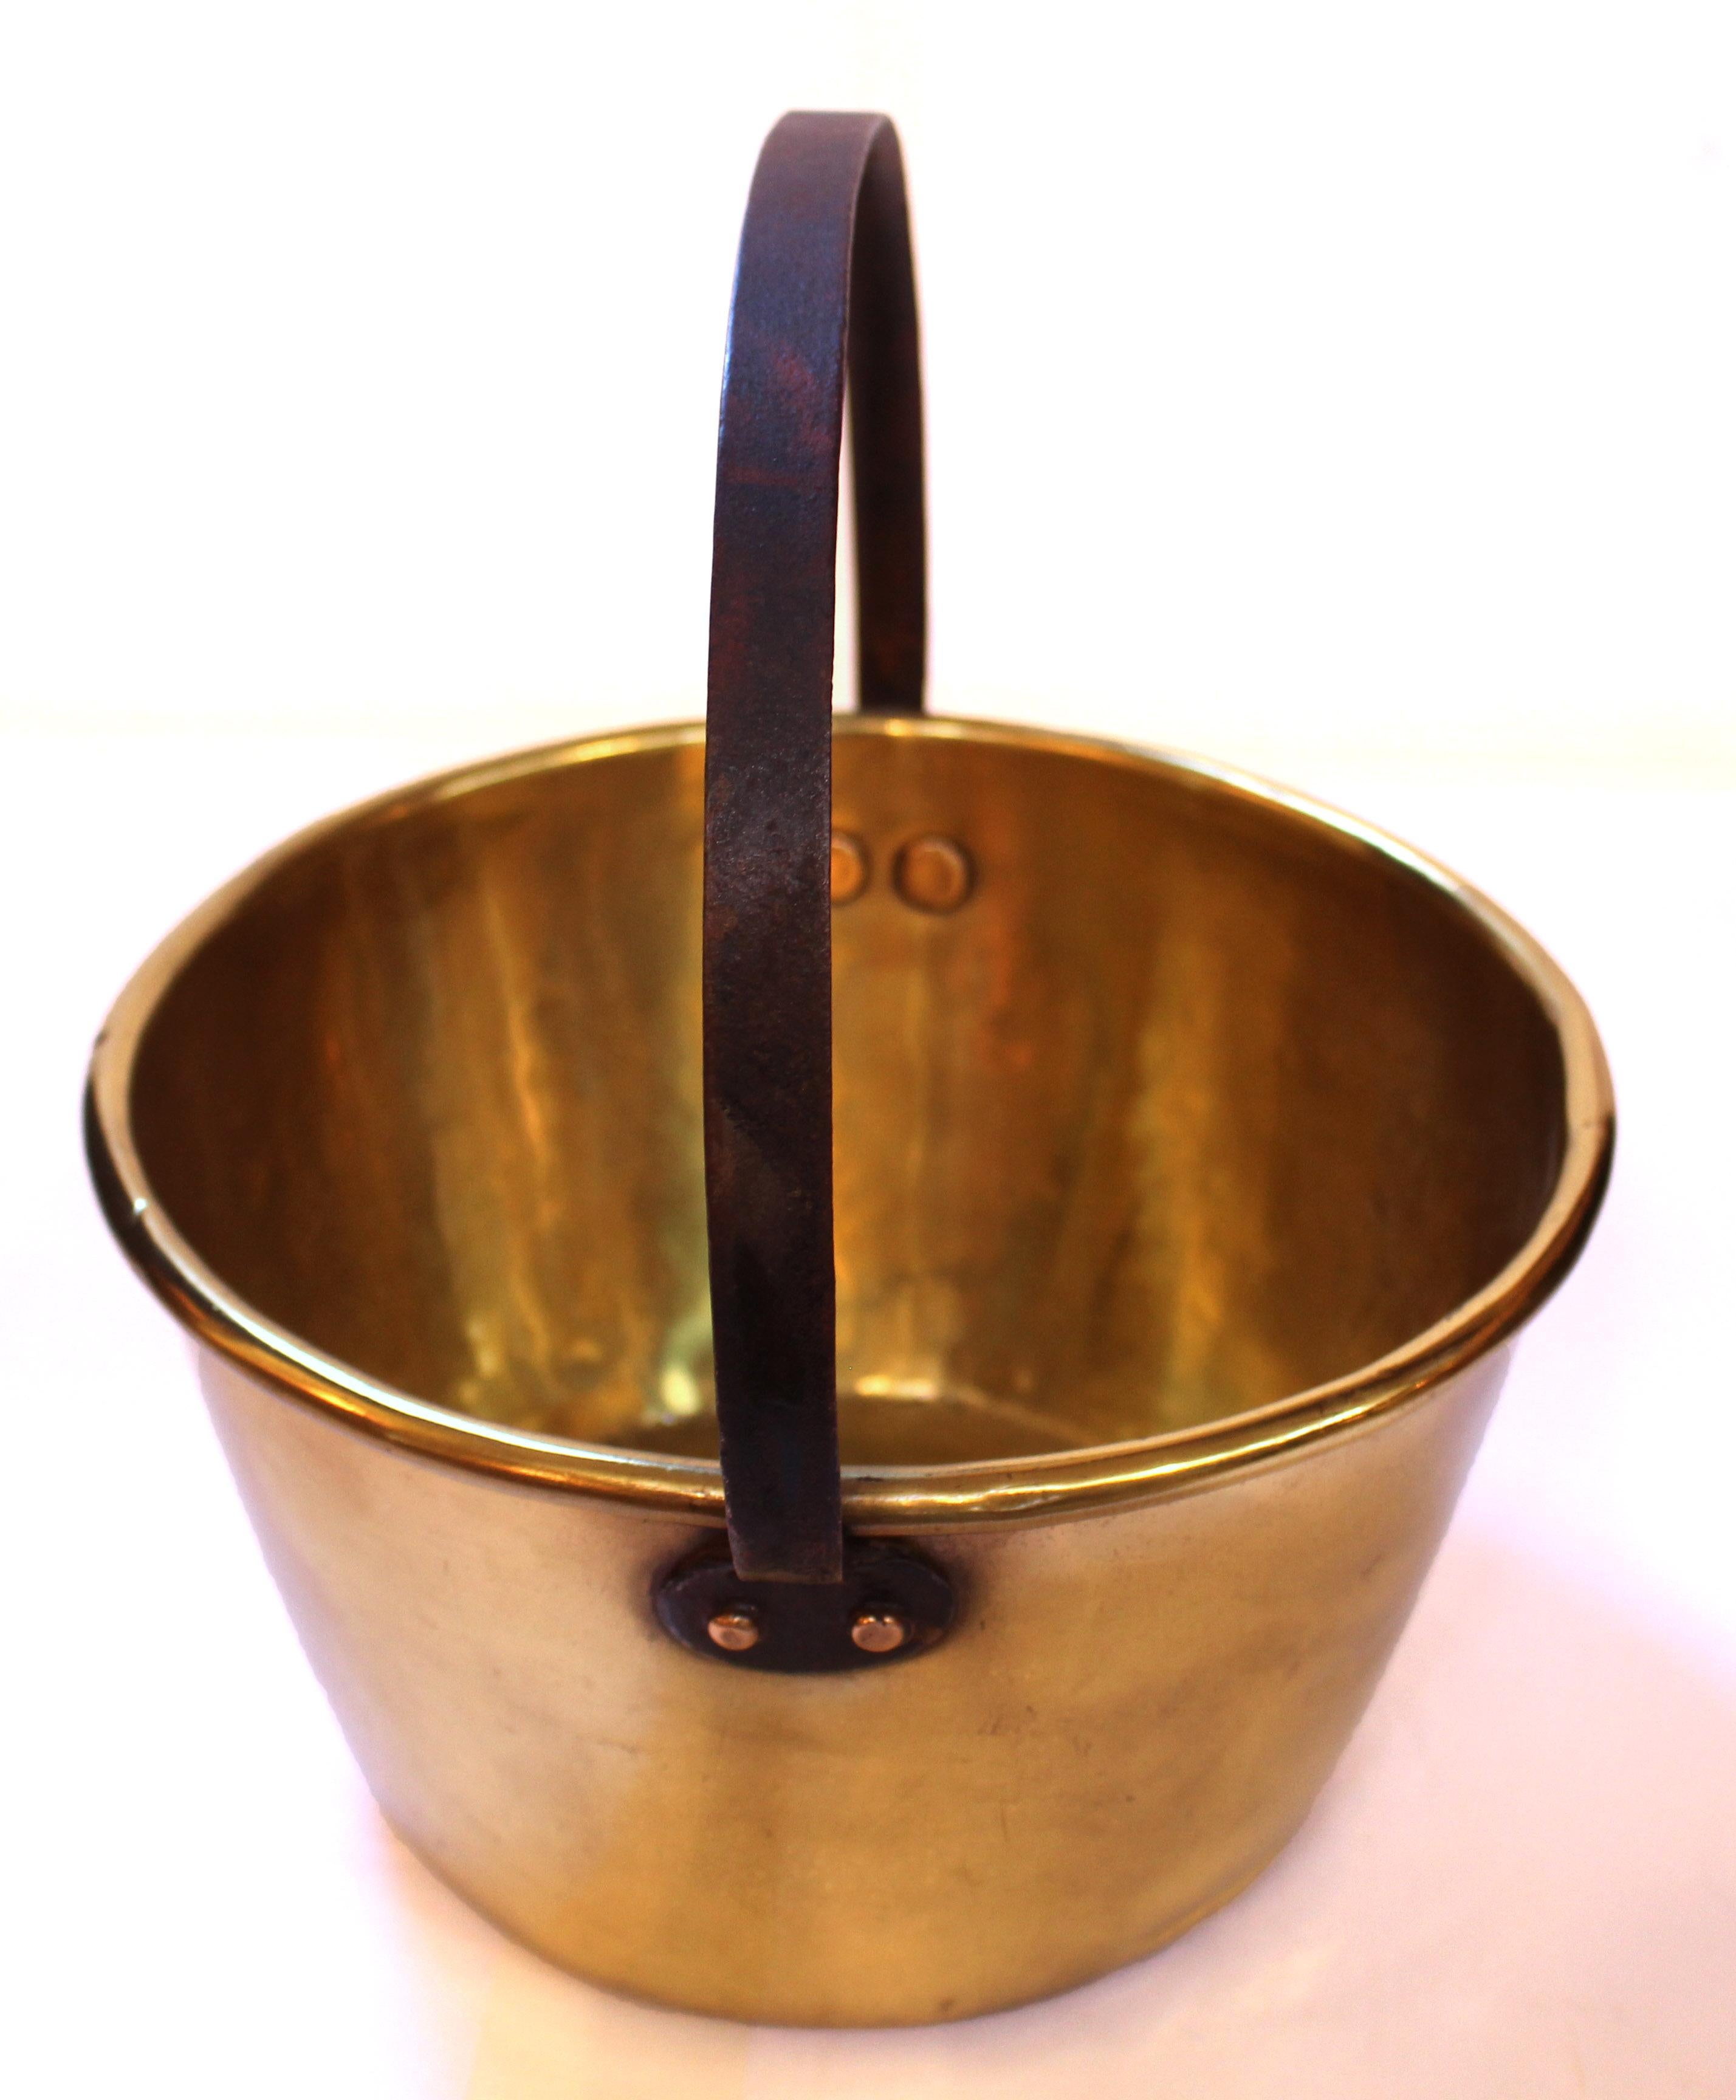 Seau à lait en laiton de la fin du XIXe siècle, anglais. Poignée en fer à position fixe rivetée en laiton.
11 7/8